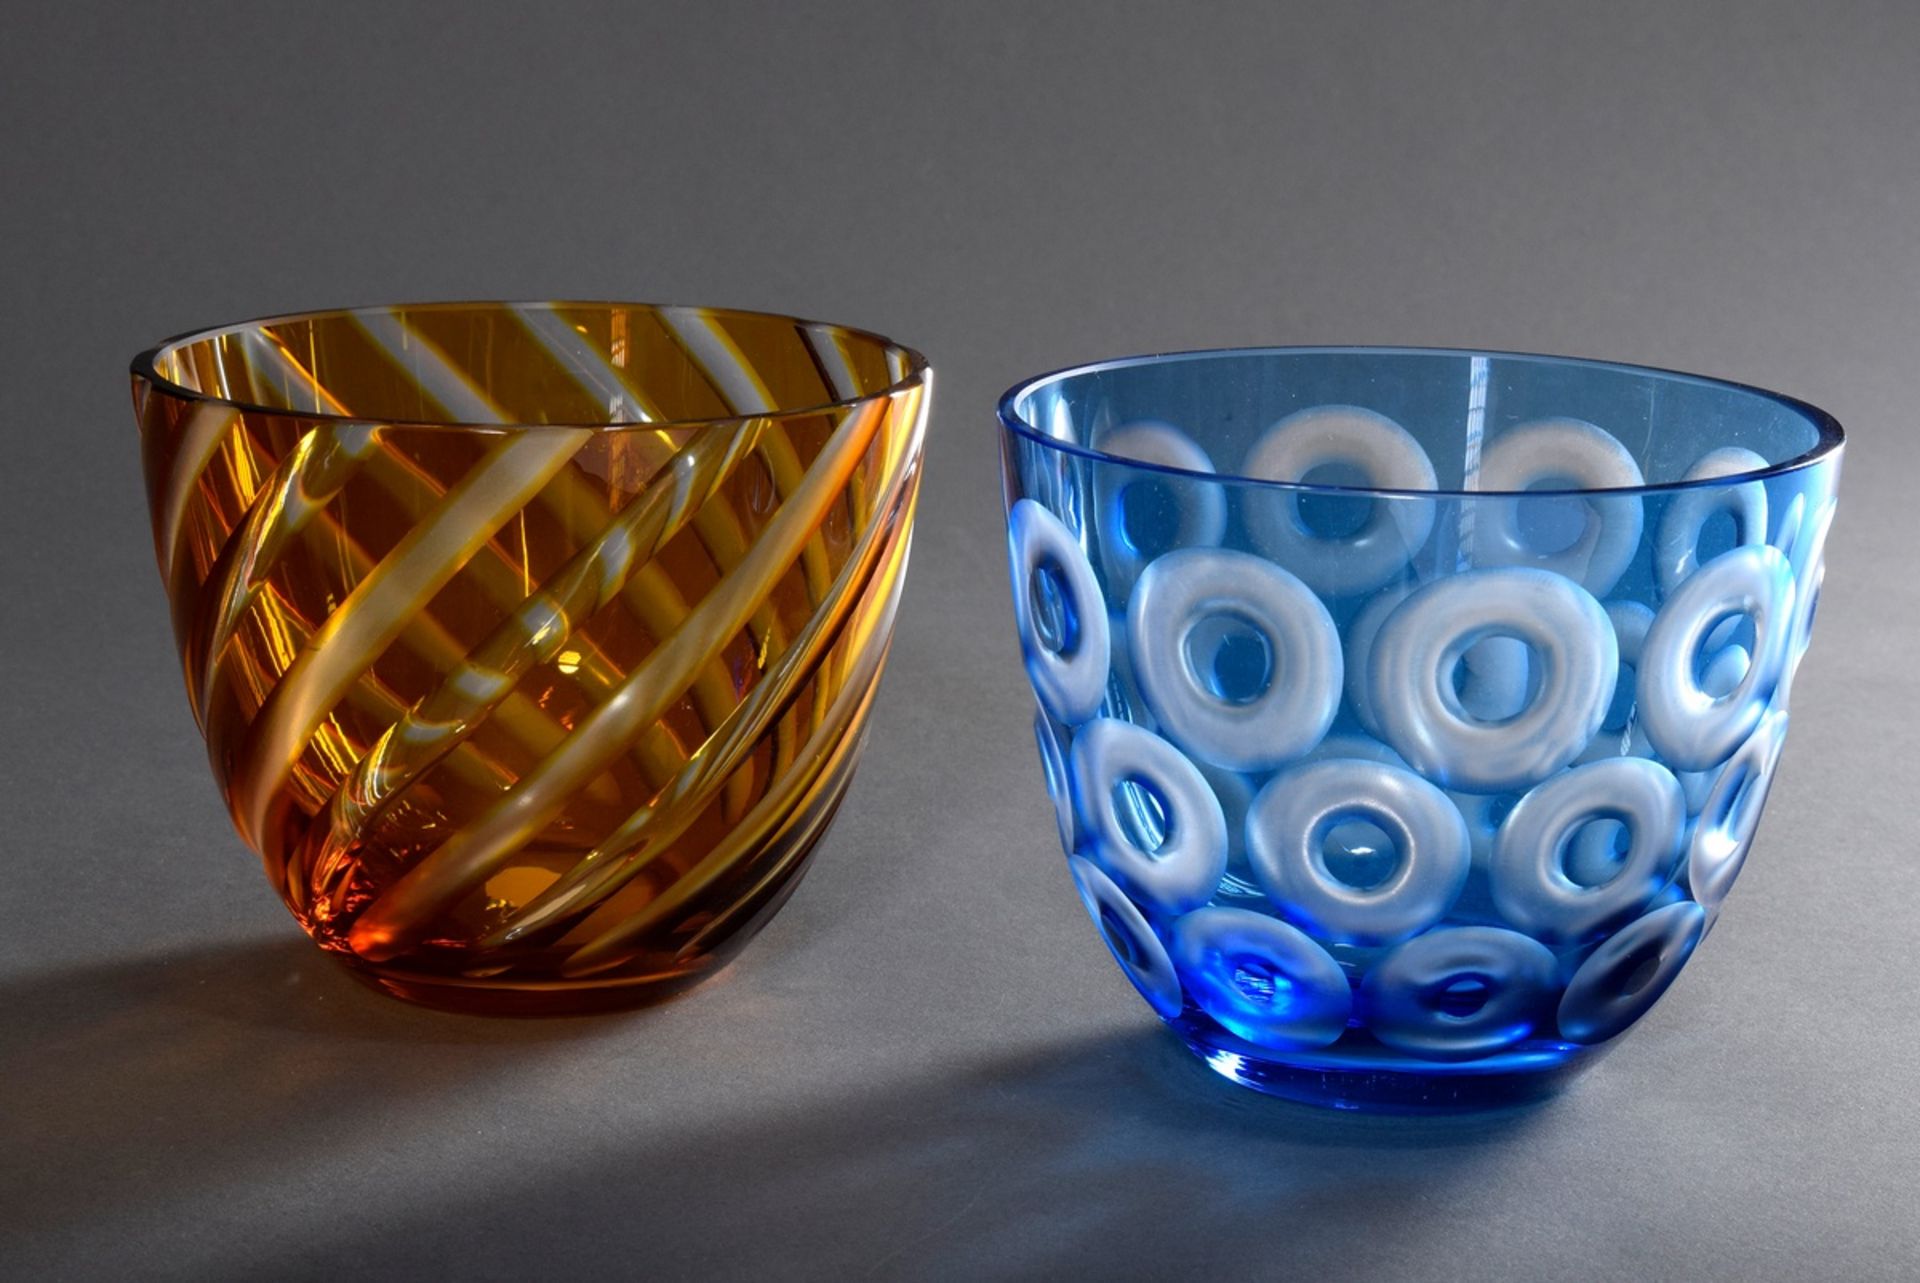 2 Rotter Schalen "Kreise" und "Streifen" in blau | 2 red bowls "Circles" and "Stripes" in blue and